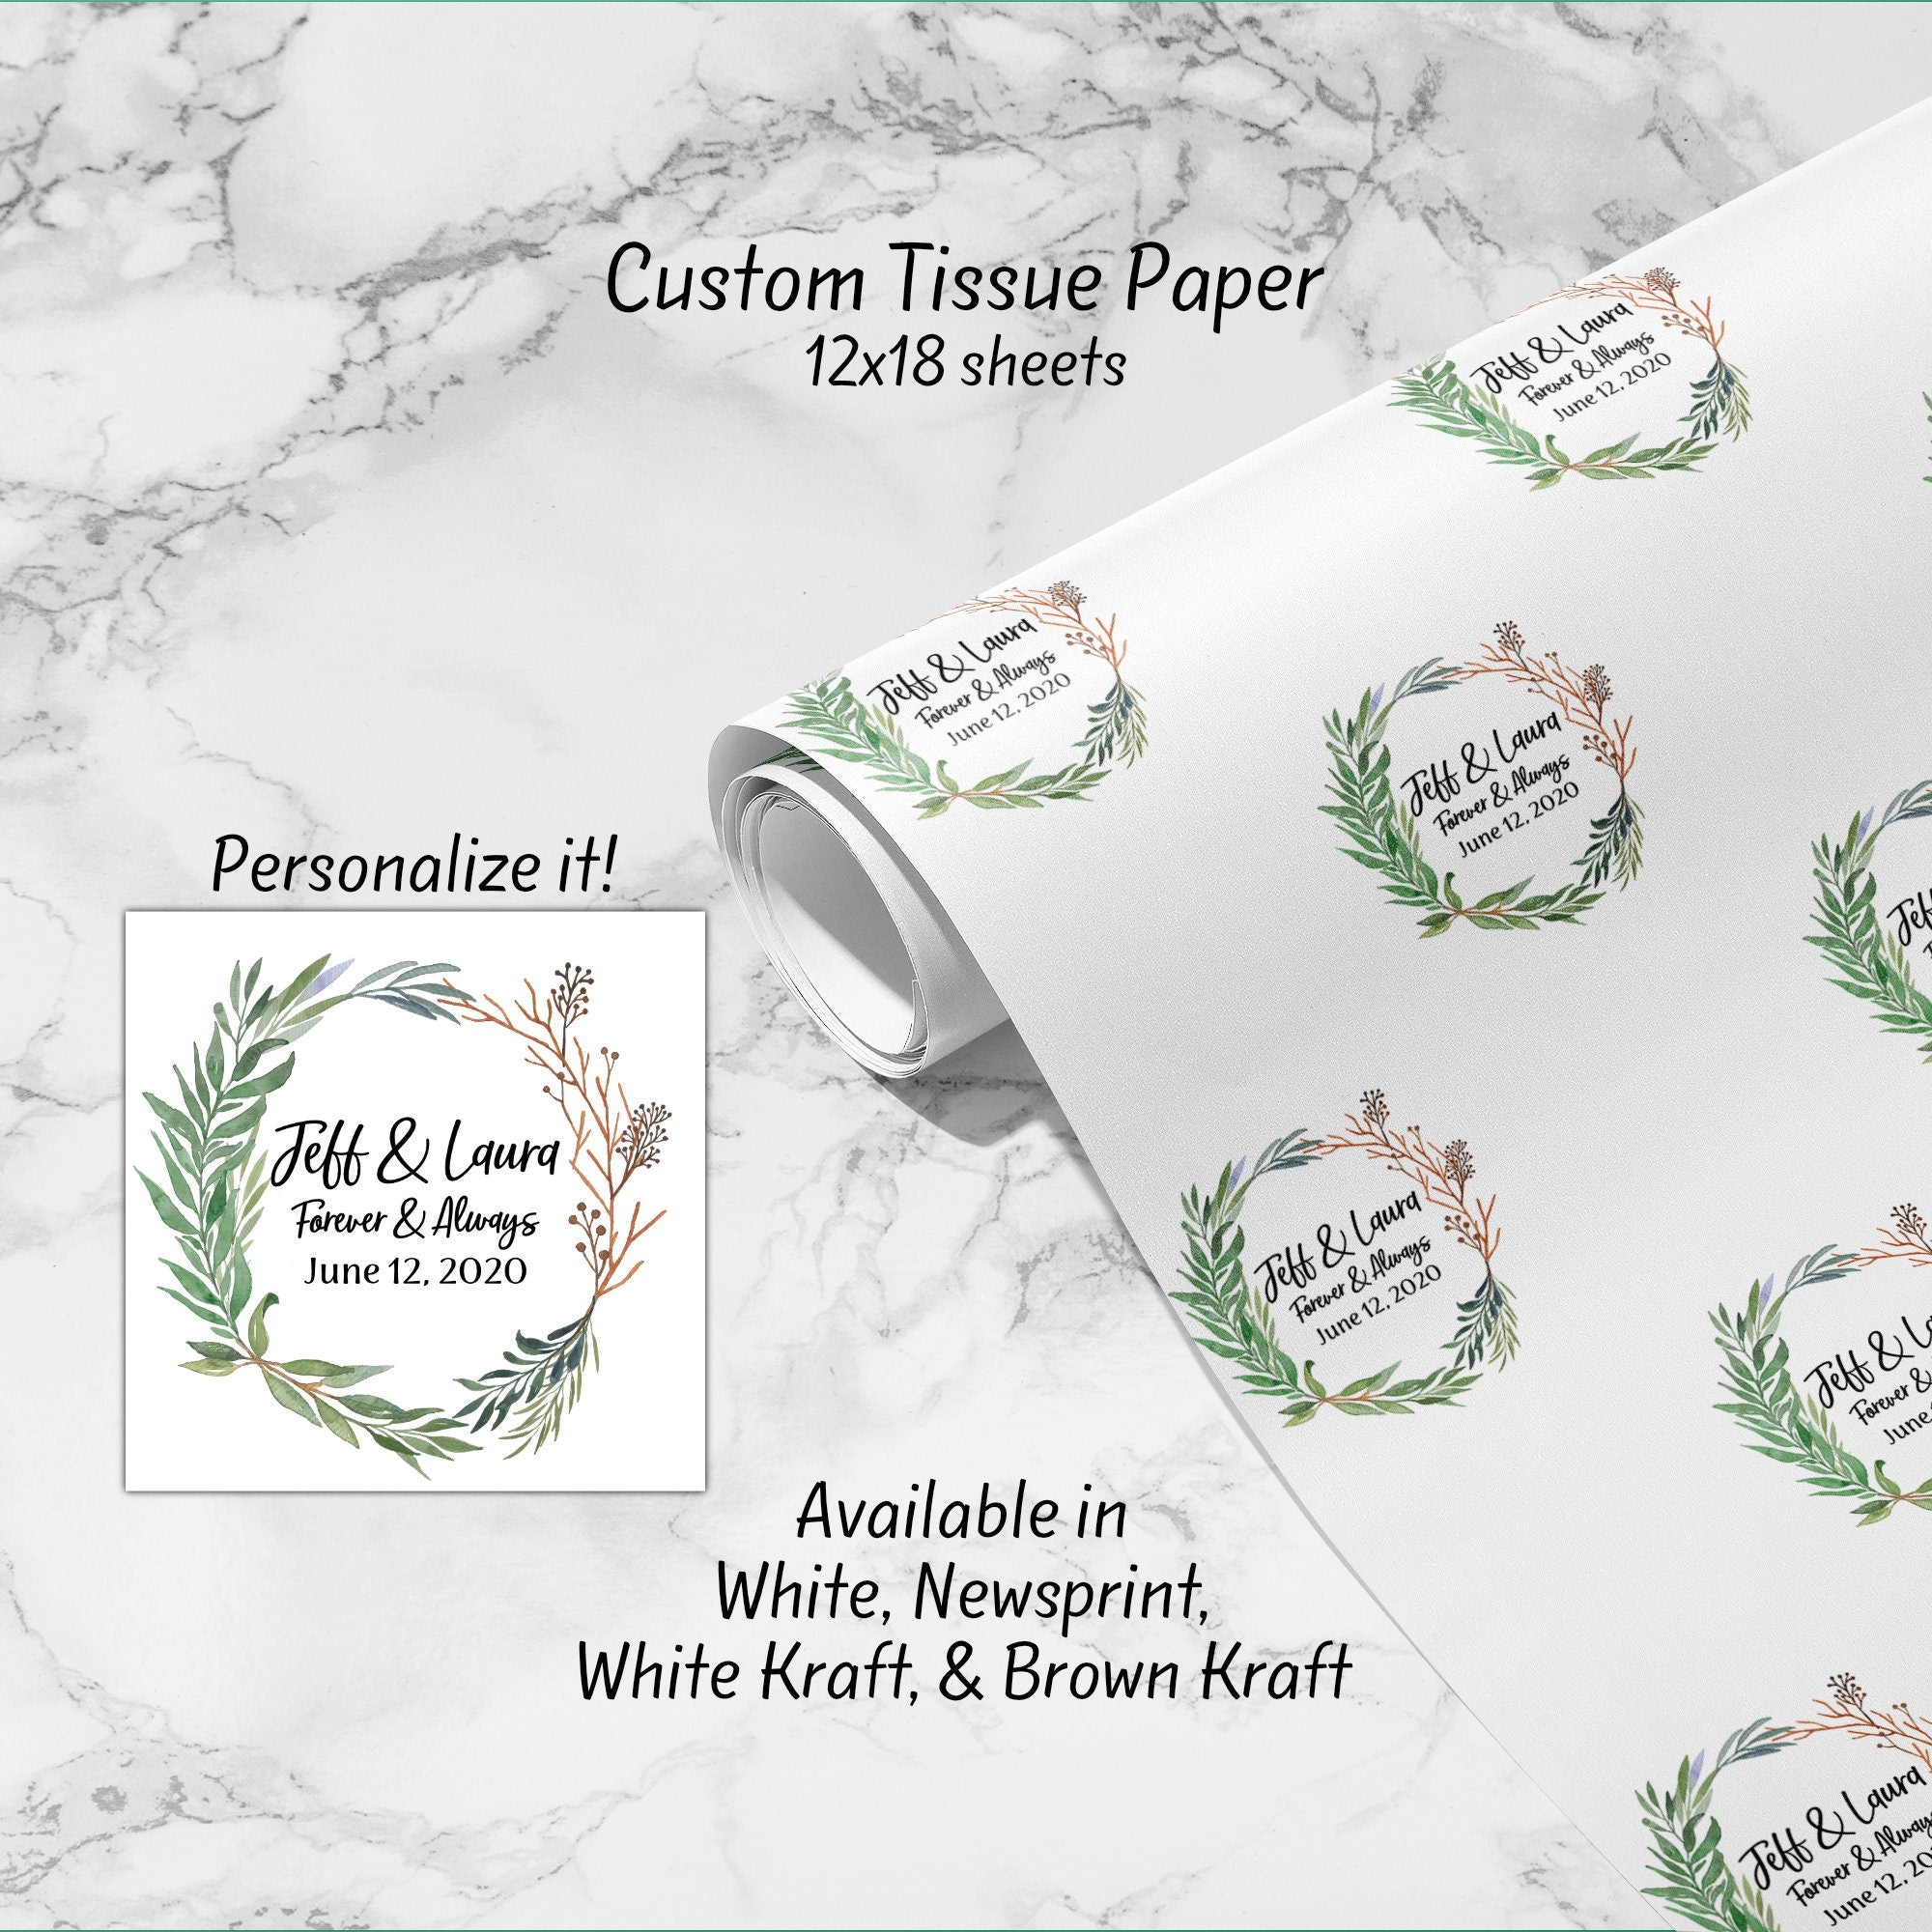 Custom Tissue Paper – The Letter Gift Shop